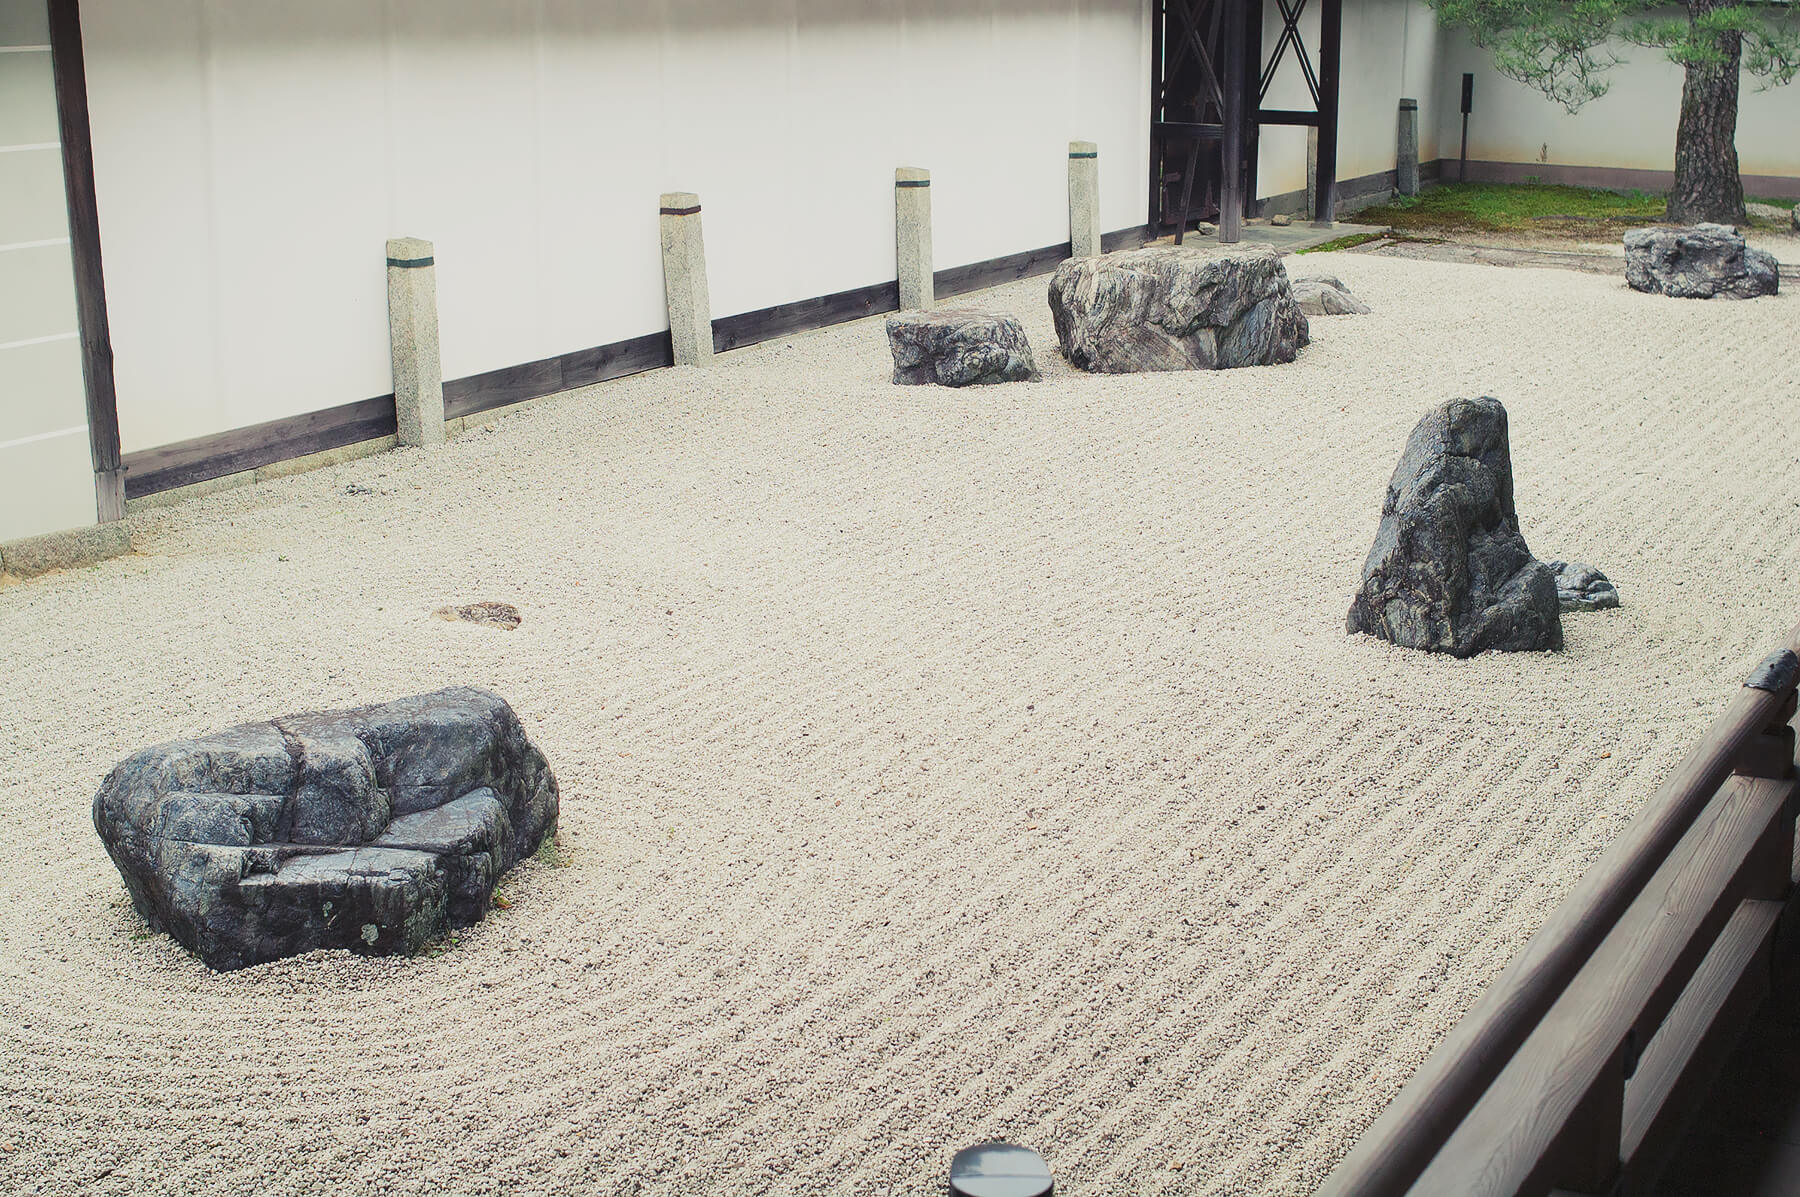 
          京都「南禅寺本坊」の庭園写真3
      